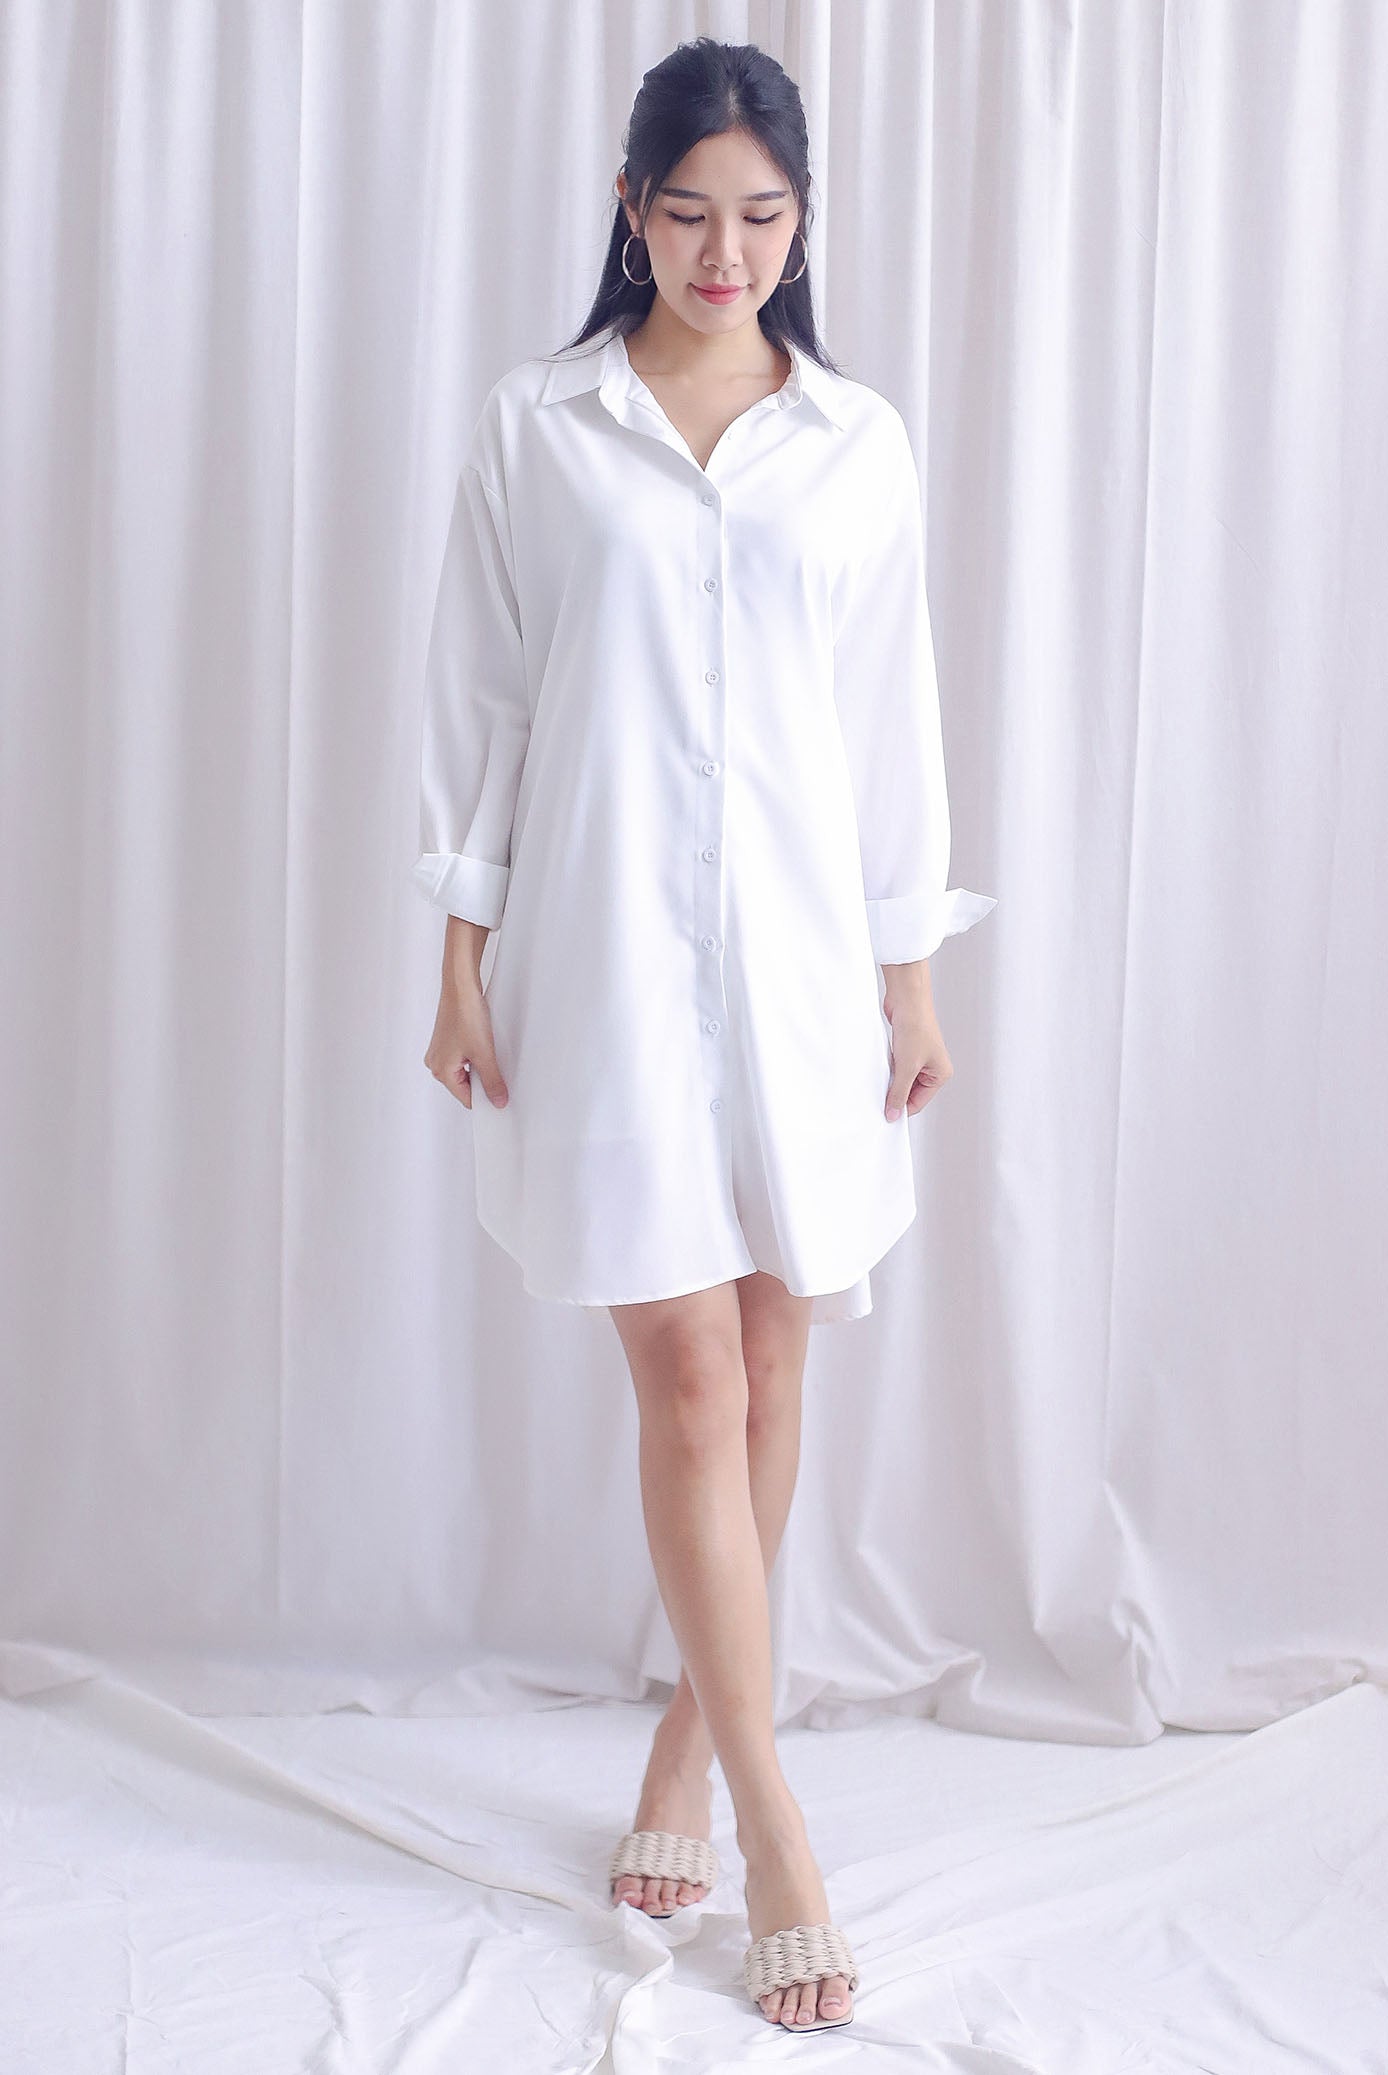 Lannie Multi-Way Shirt Dress In White